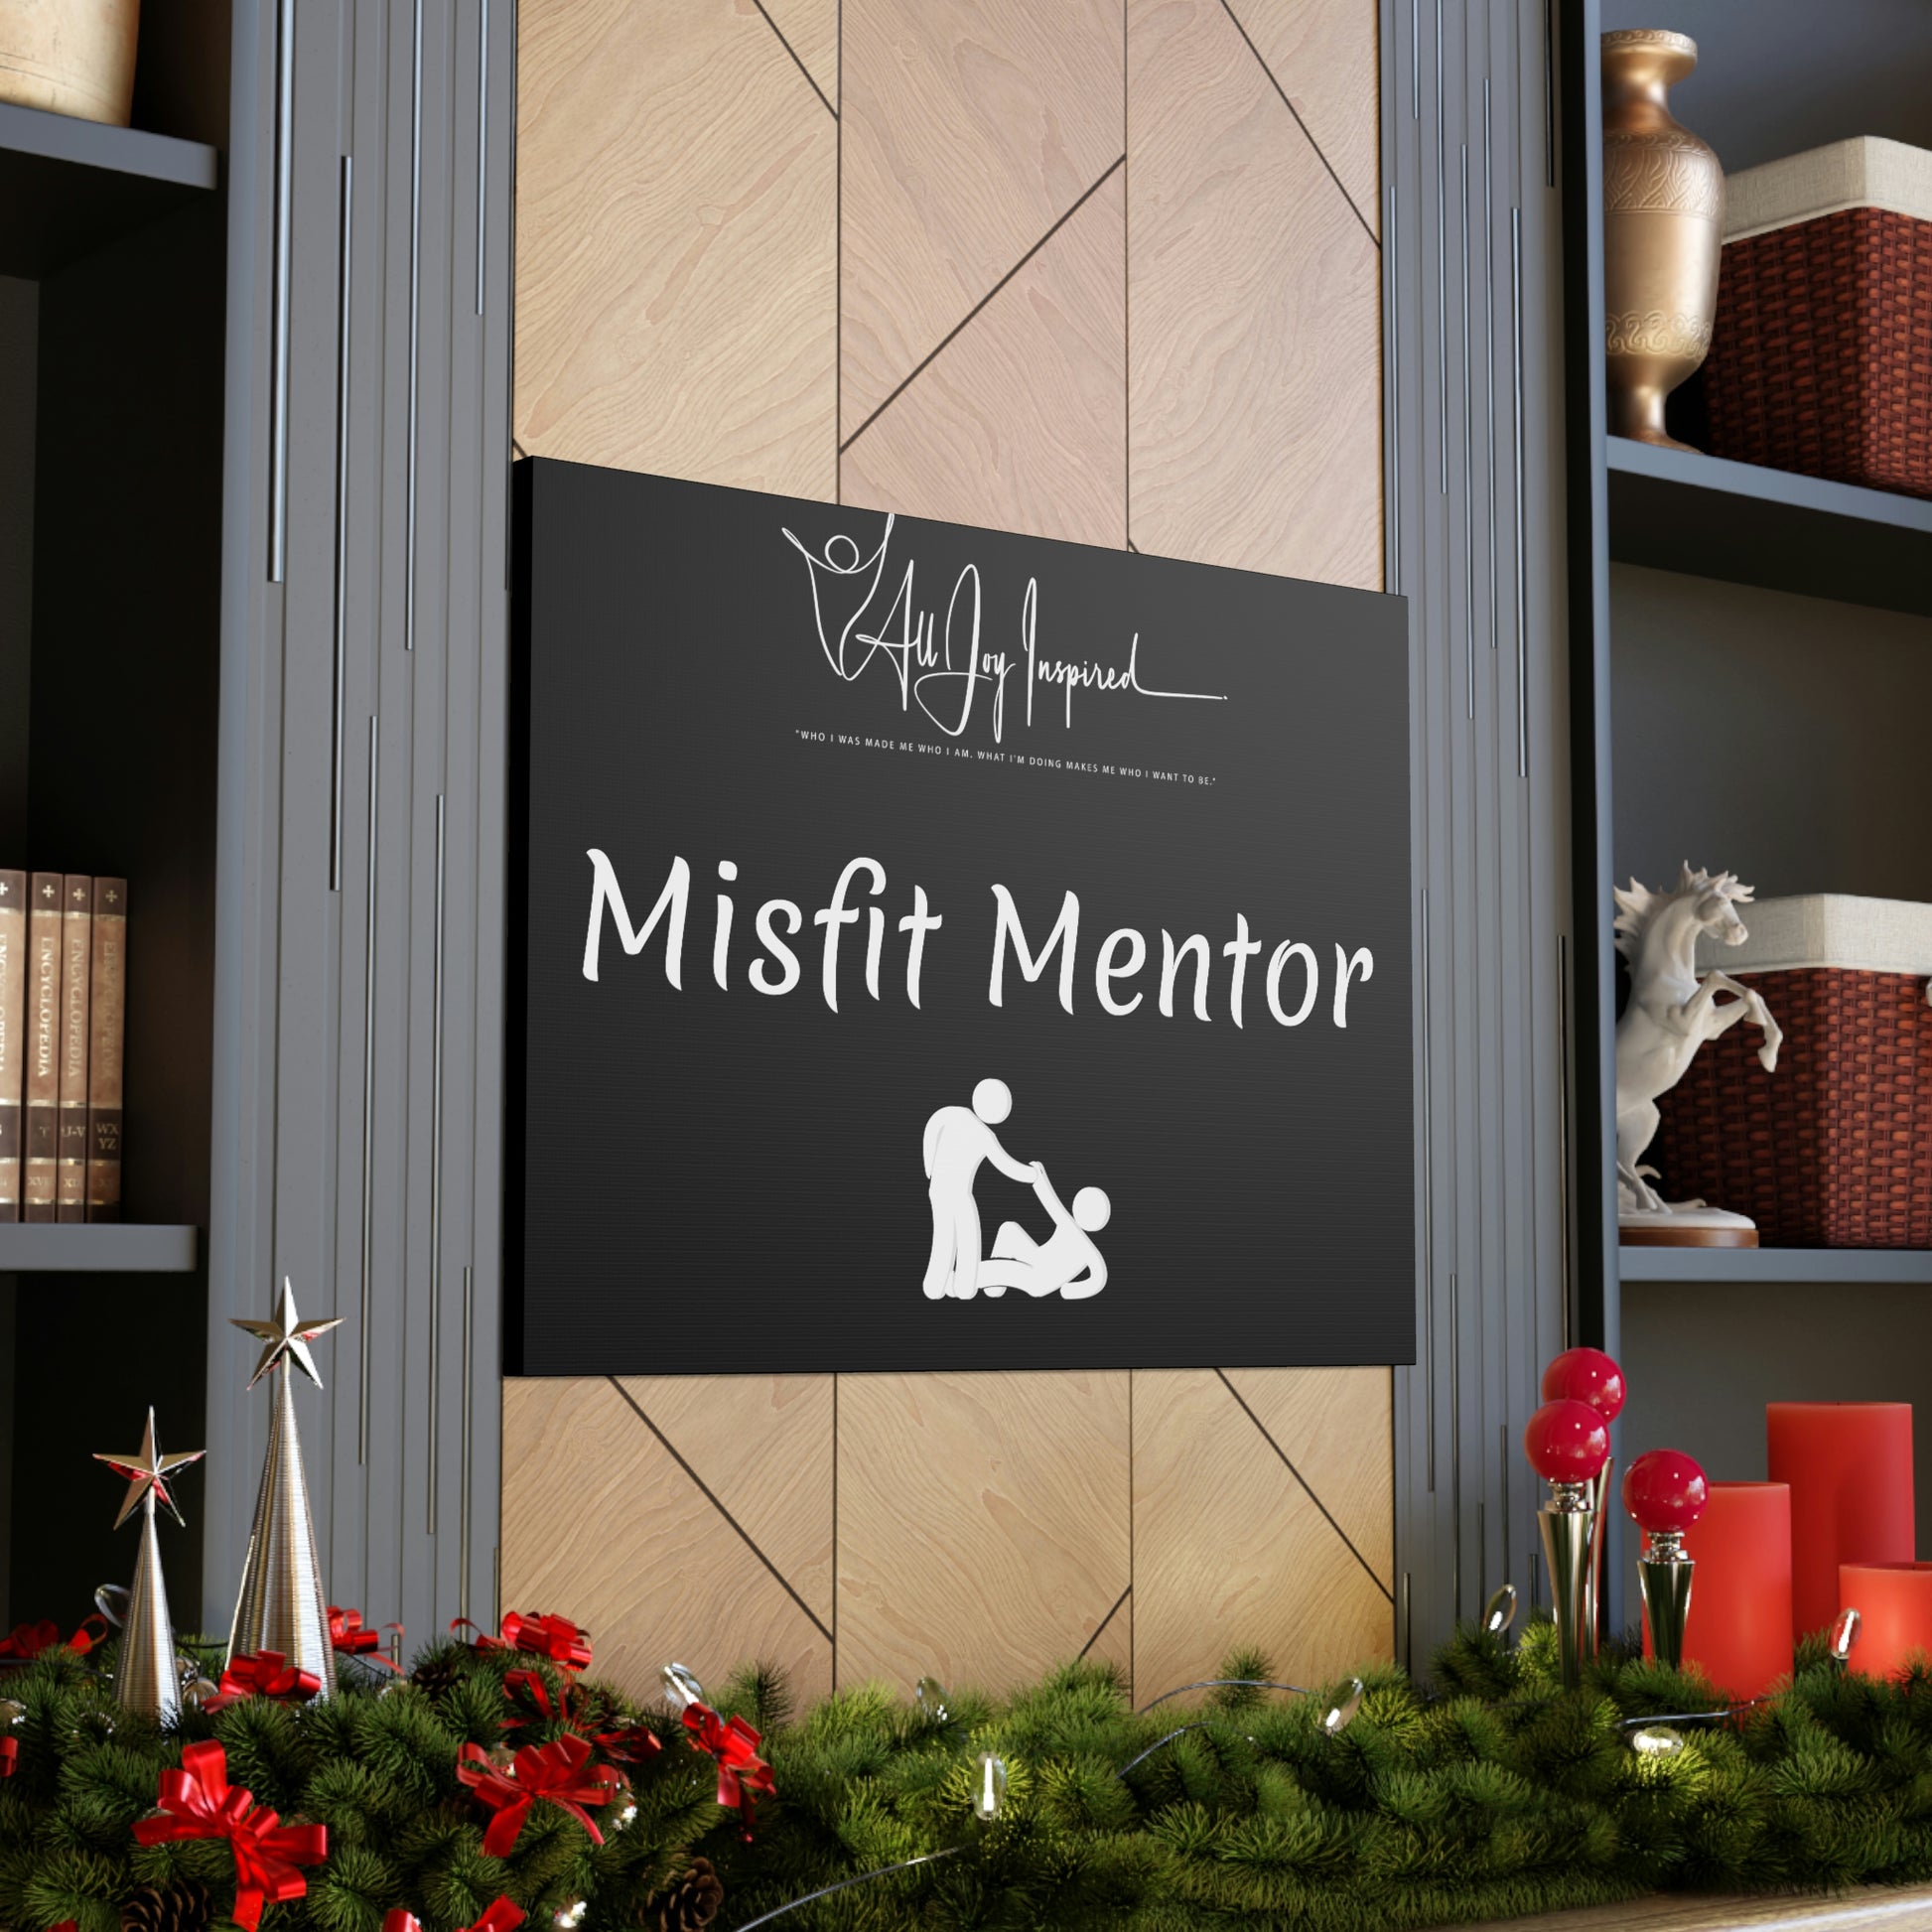 Misfit Mentor Canvas - All JOY Inspired